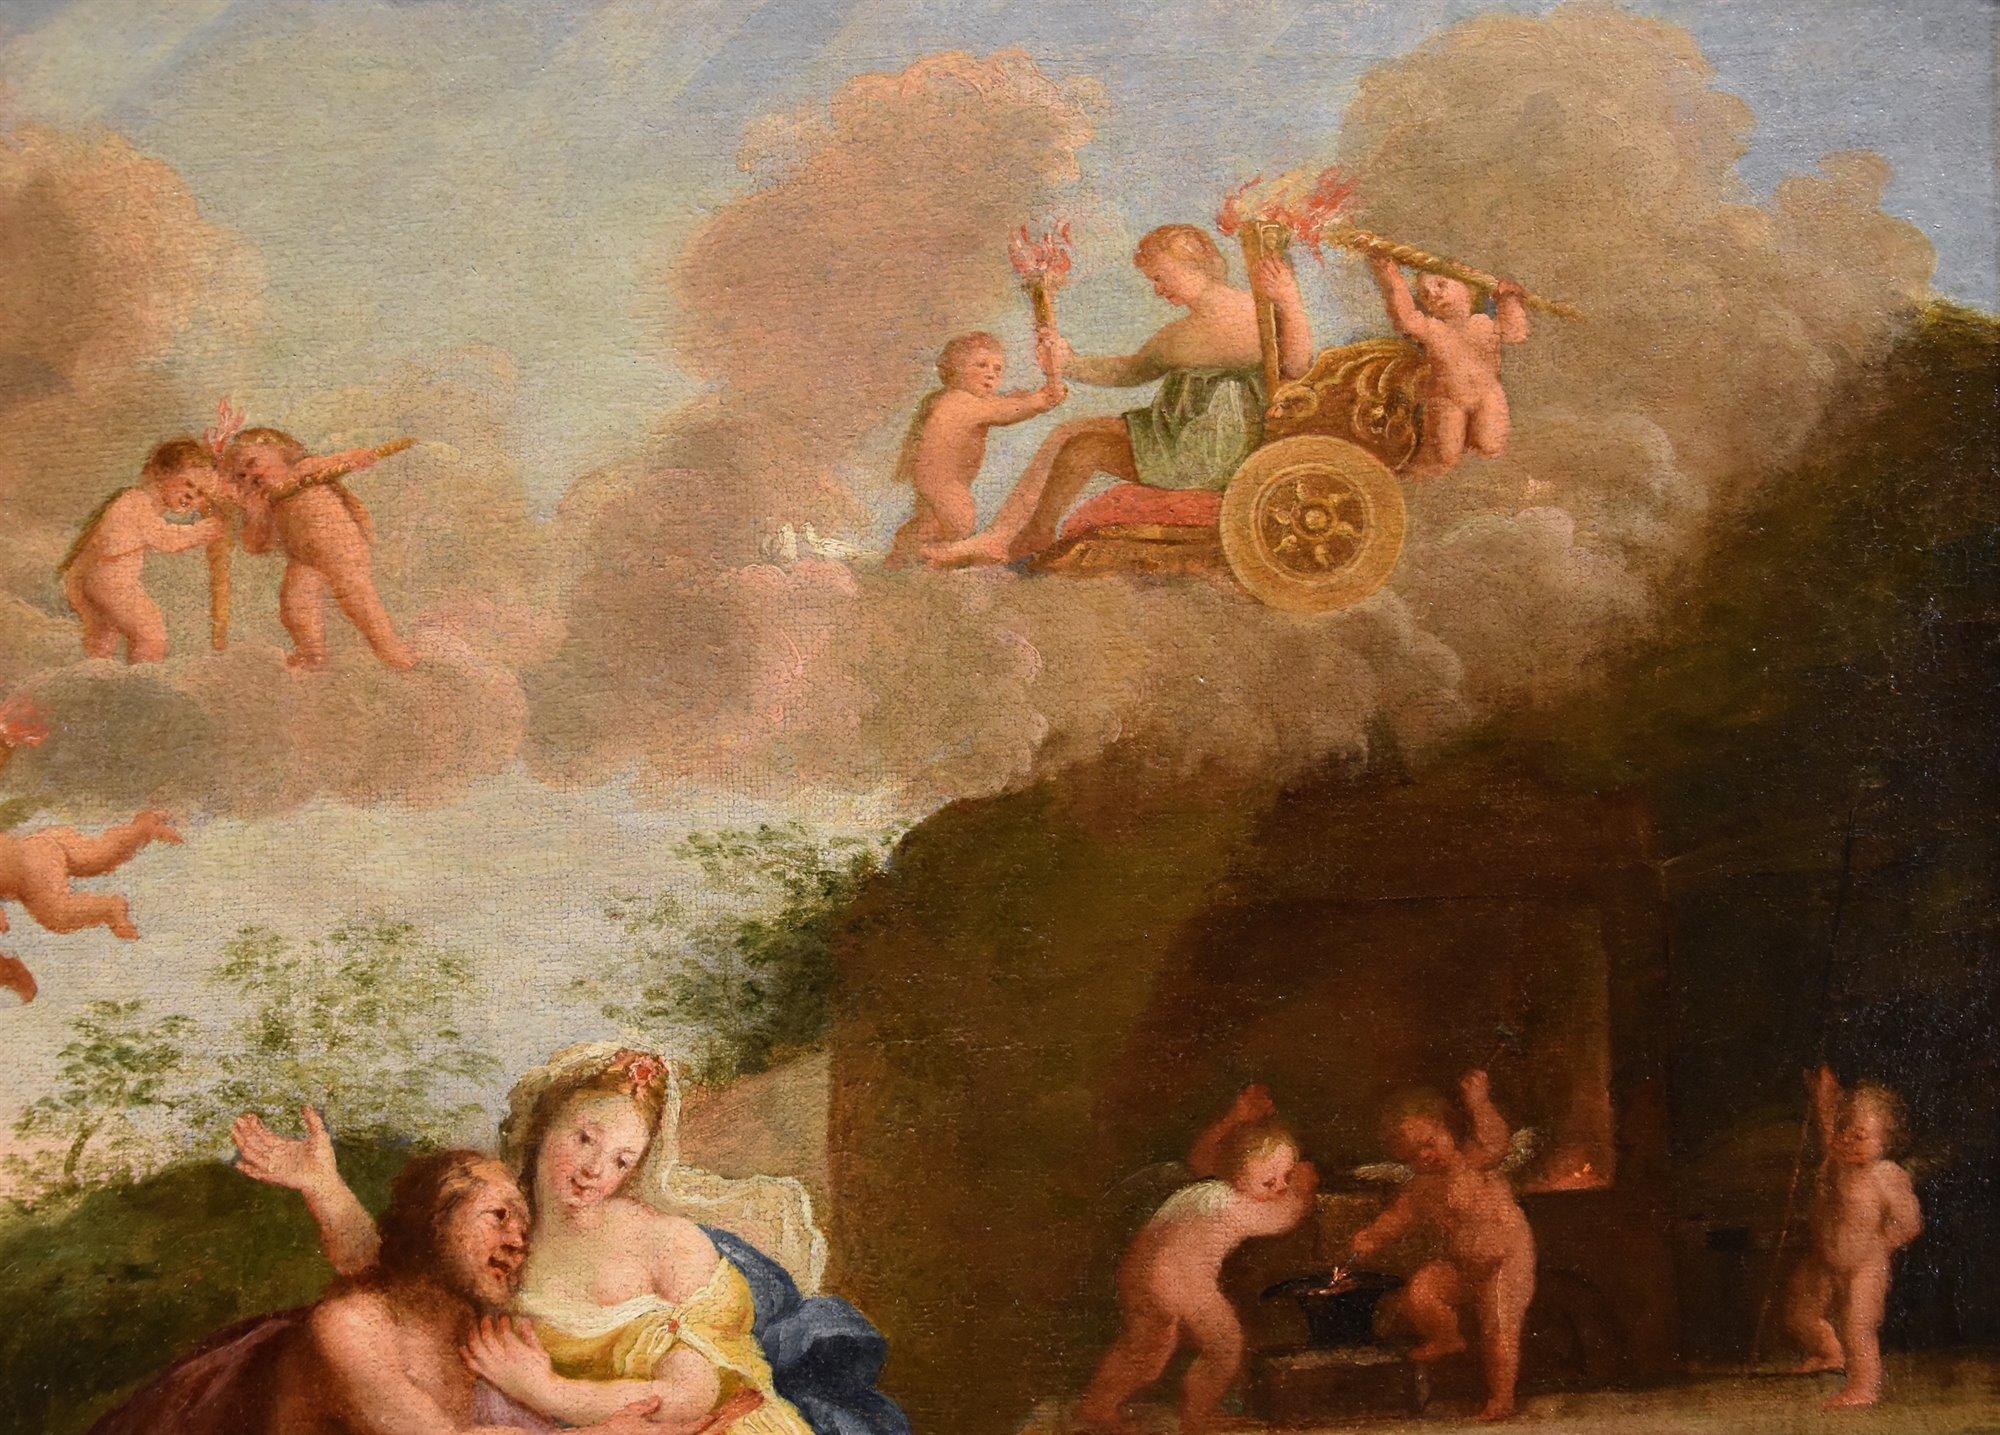 Mars Venus Albani Paint Oil on canvas 17th Century Old master Mythological For Sale 1